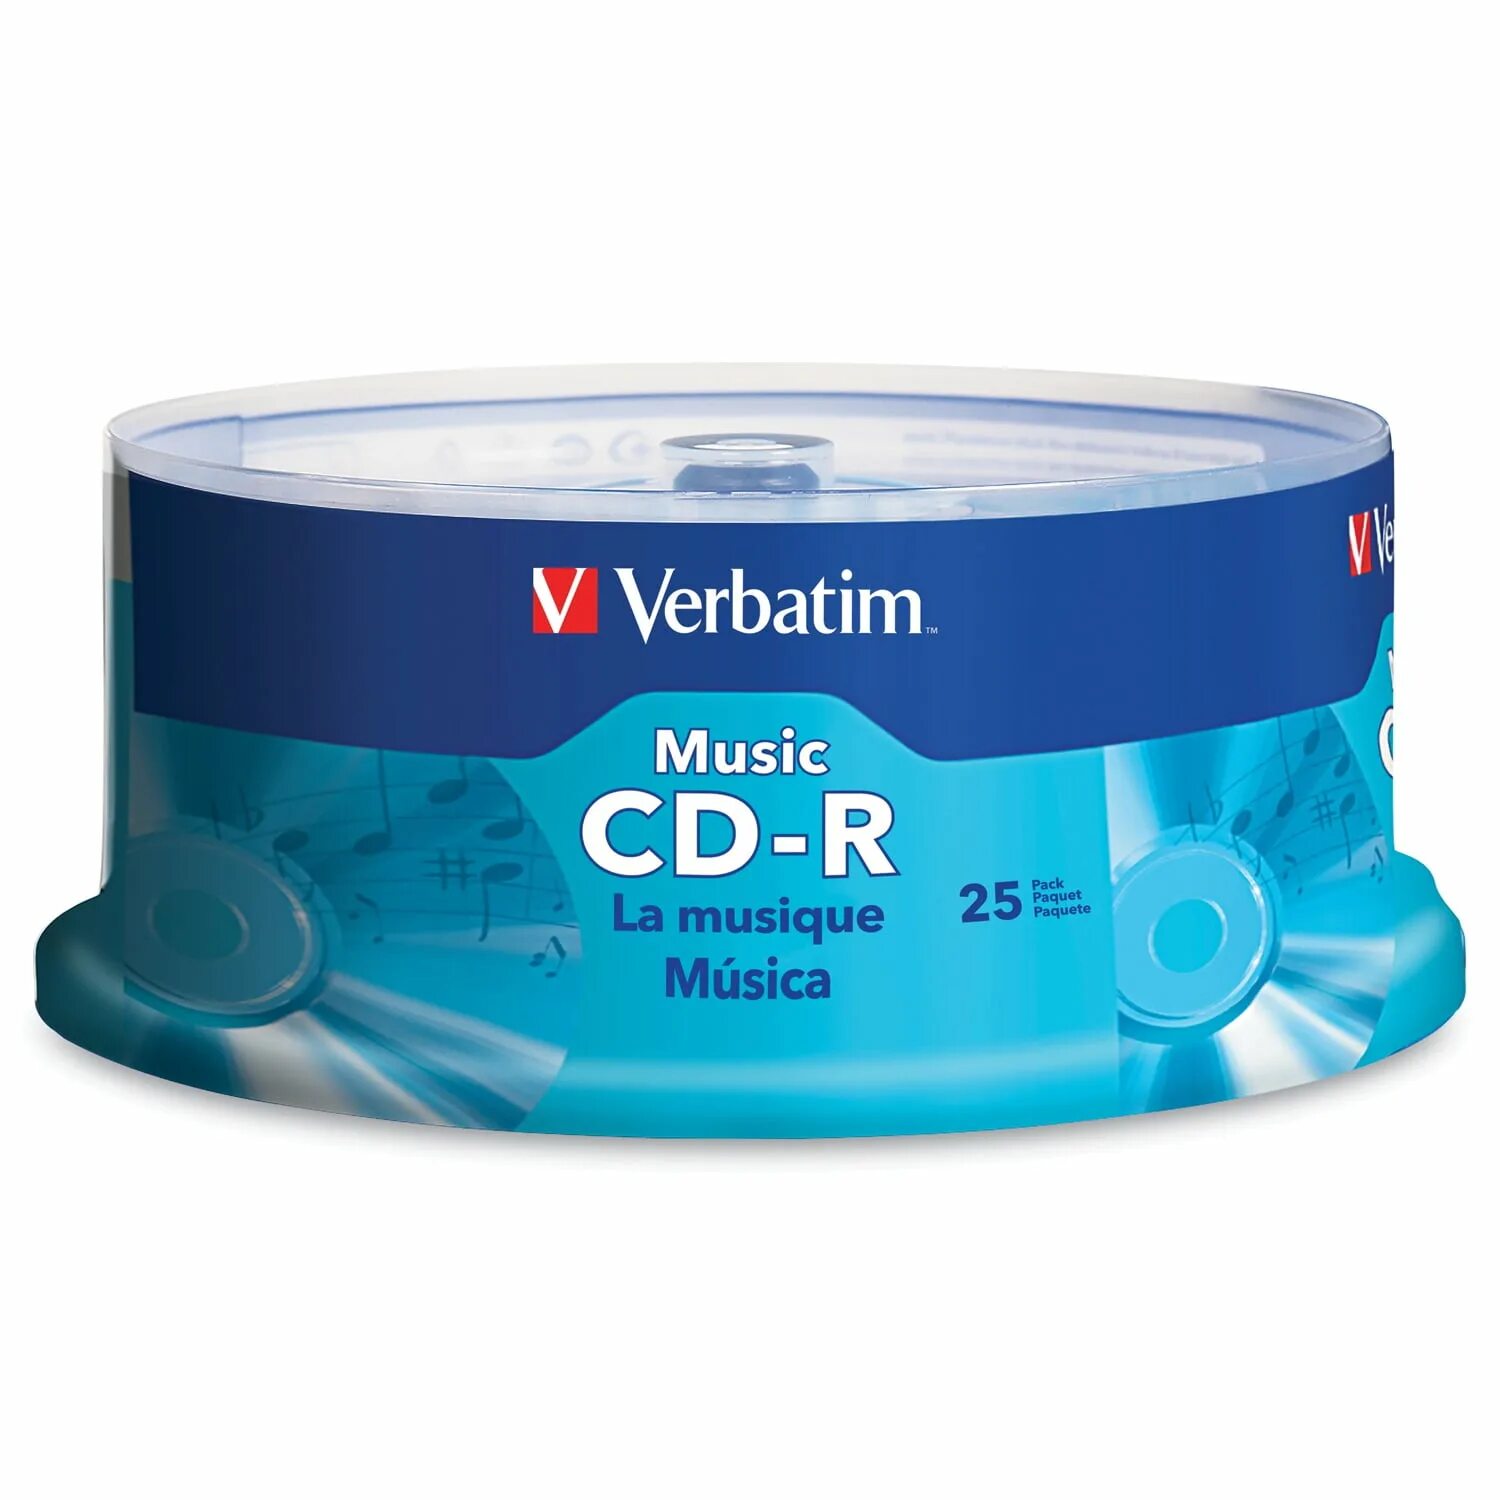 Verbatim Music CD R 80 min. Диск Verbatim CD-R 80min Audio (Music). Verbatim CD-RW 80 min Music Audio. Verbatim Music CD-R 43365.